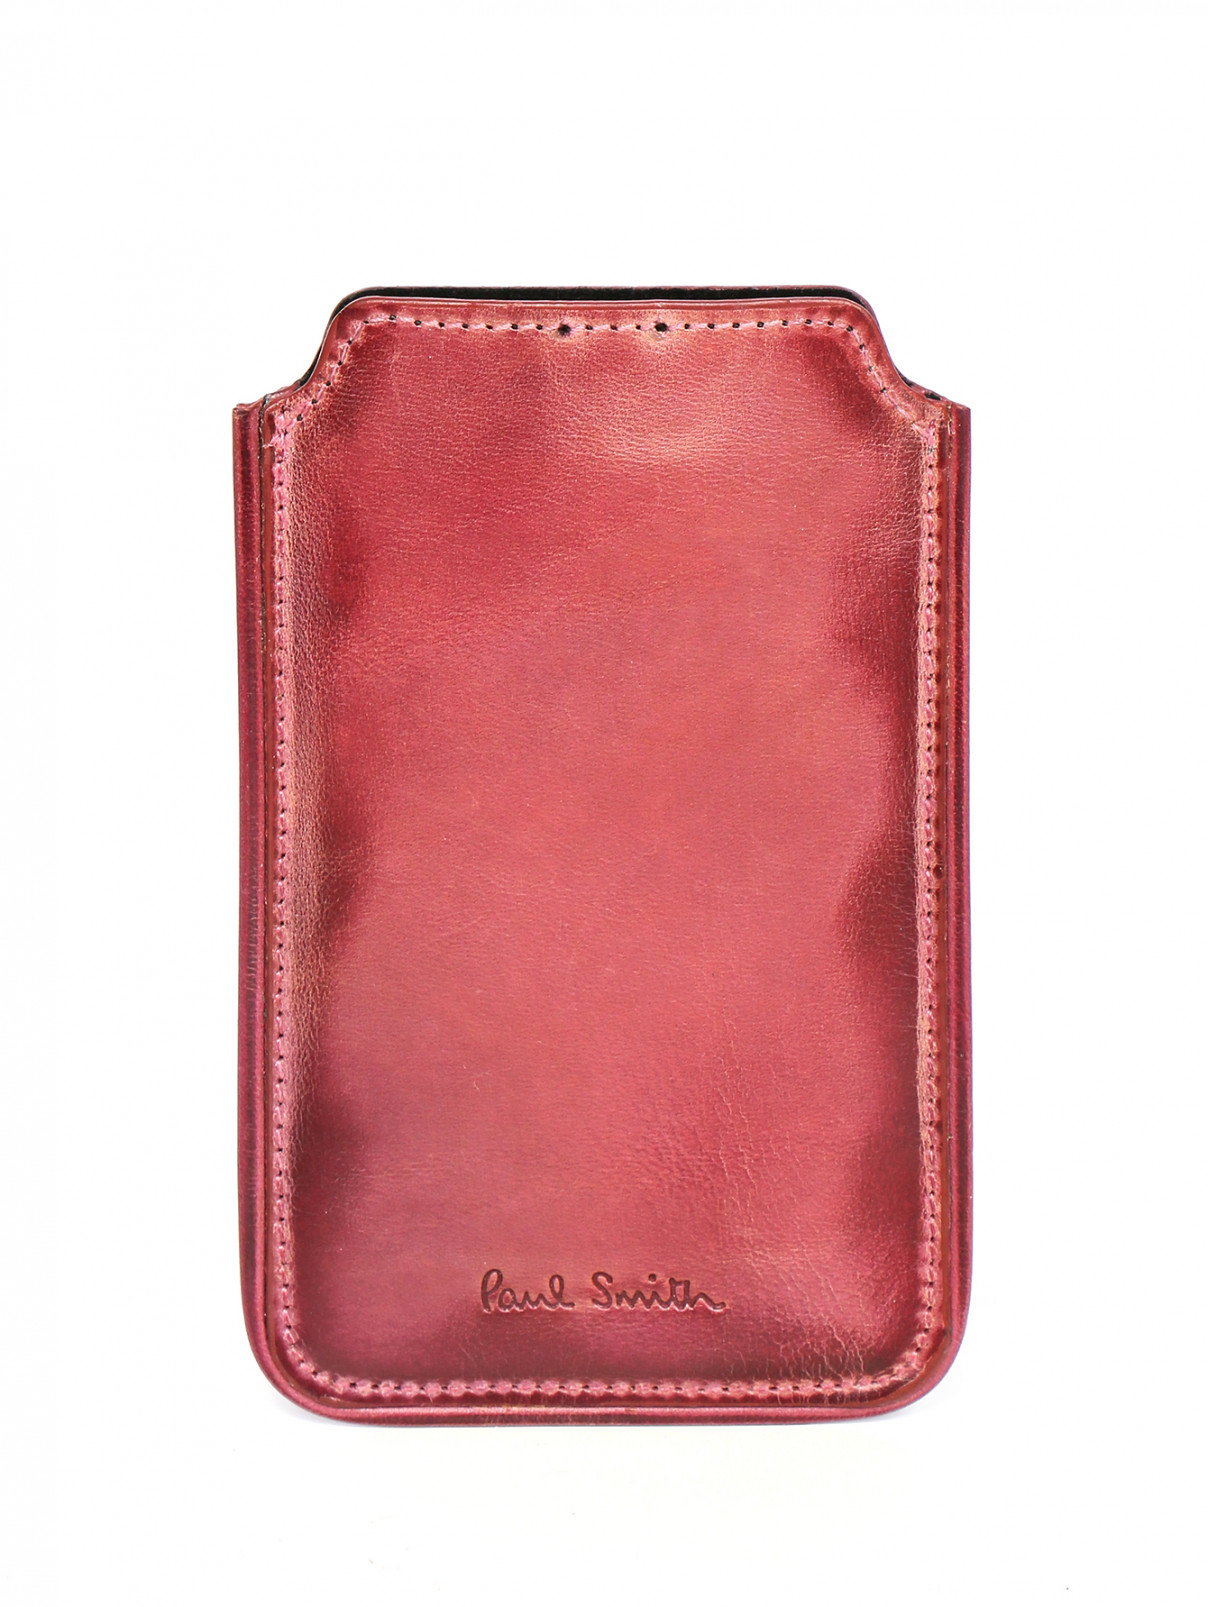 Чехол для IPhone 4 из кожи Paul Smith  –  Общий вид  – Цвет:  Розовый